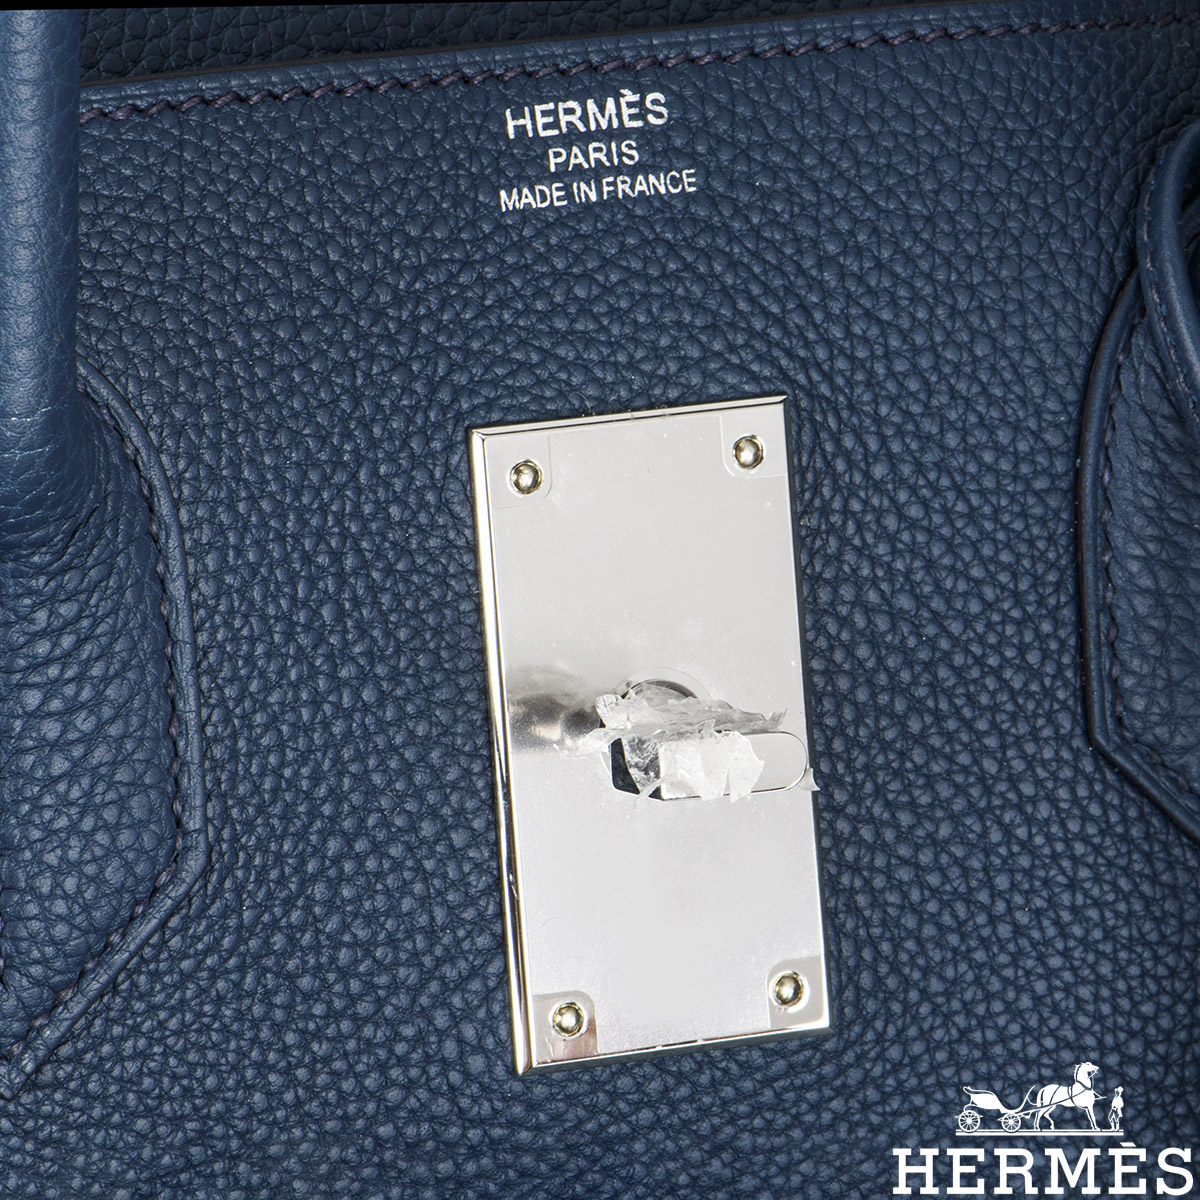 Hermès HAC Endless Road Birkin 50 - Blue Weekenders, Bags - HER407297